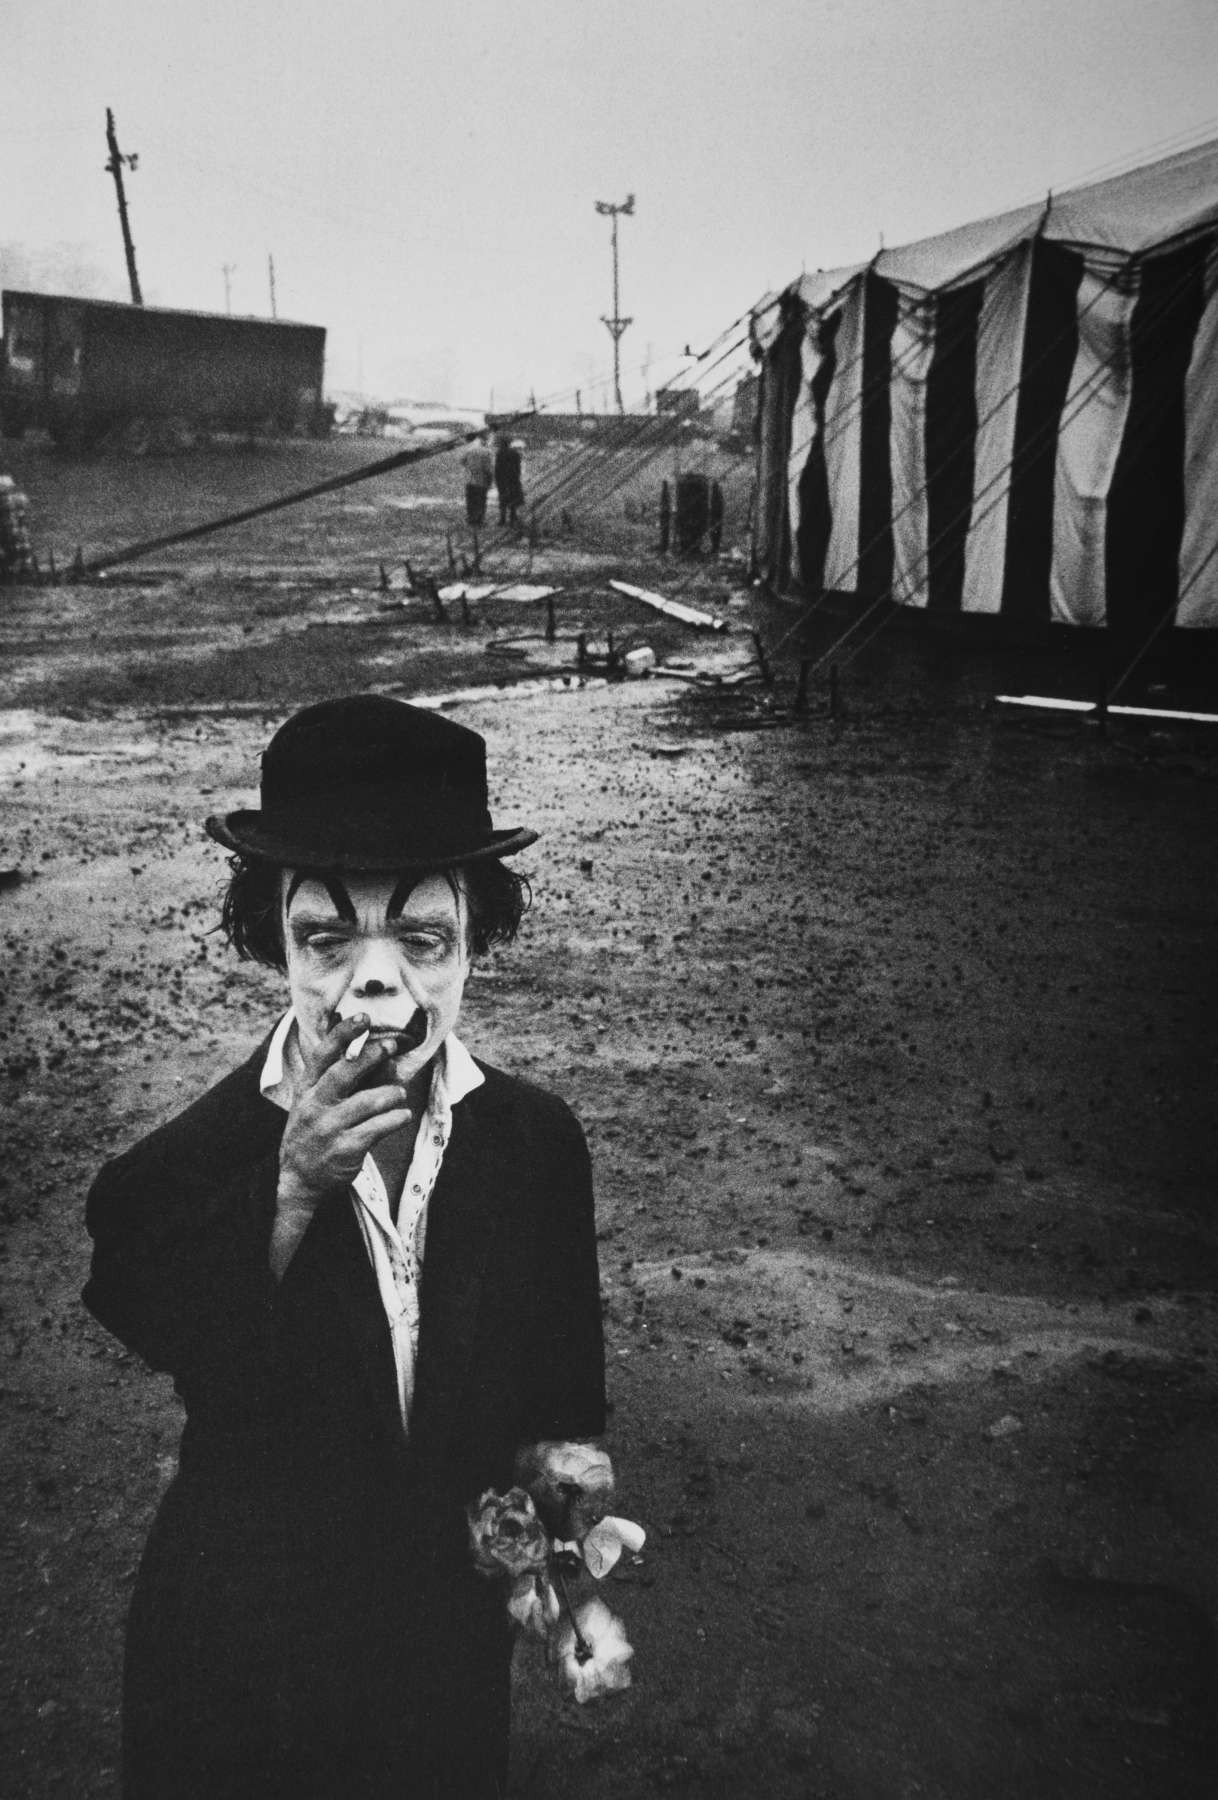 Цирк, клоун Джимми с сигаретой и цветами, 1958. Фотограф Брюс Дэвидсон